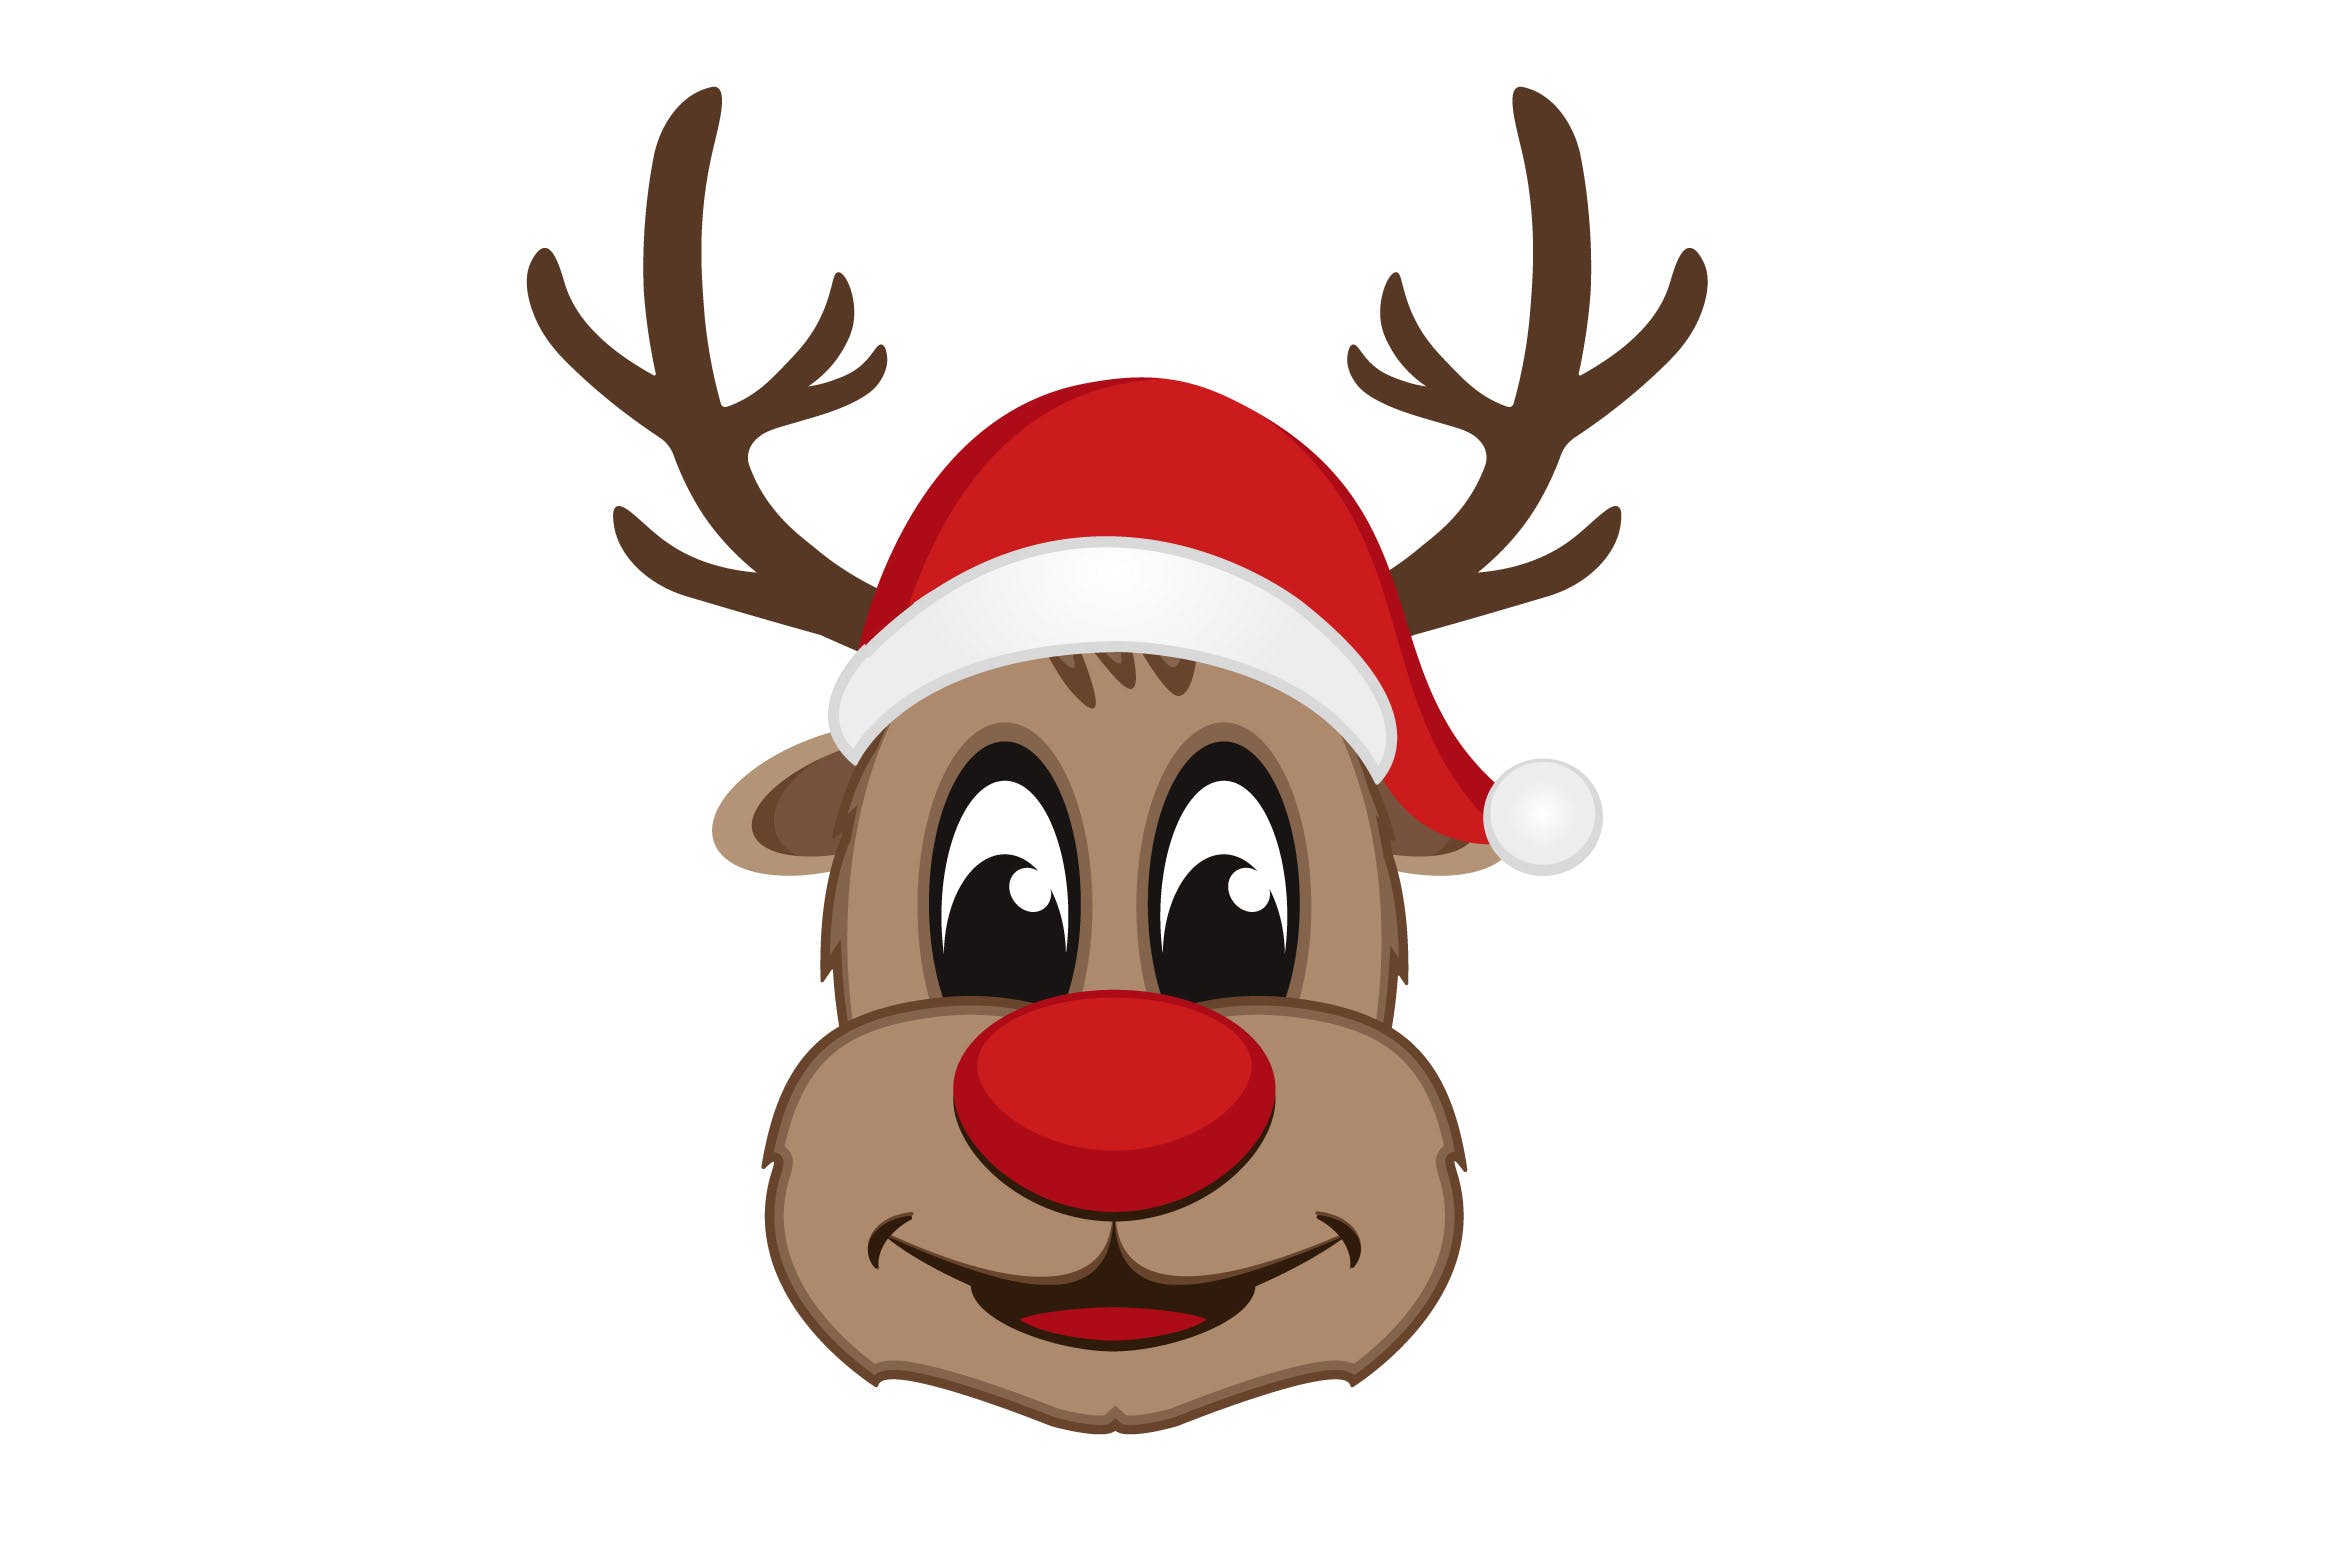 圣诞节吉祥物麋鹿矢量设计素材 Christmas Reindeer Vector Mascot插图